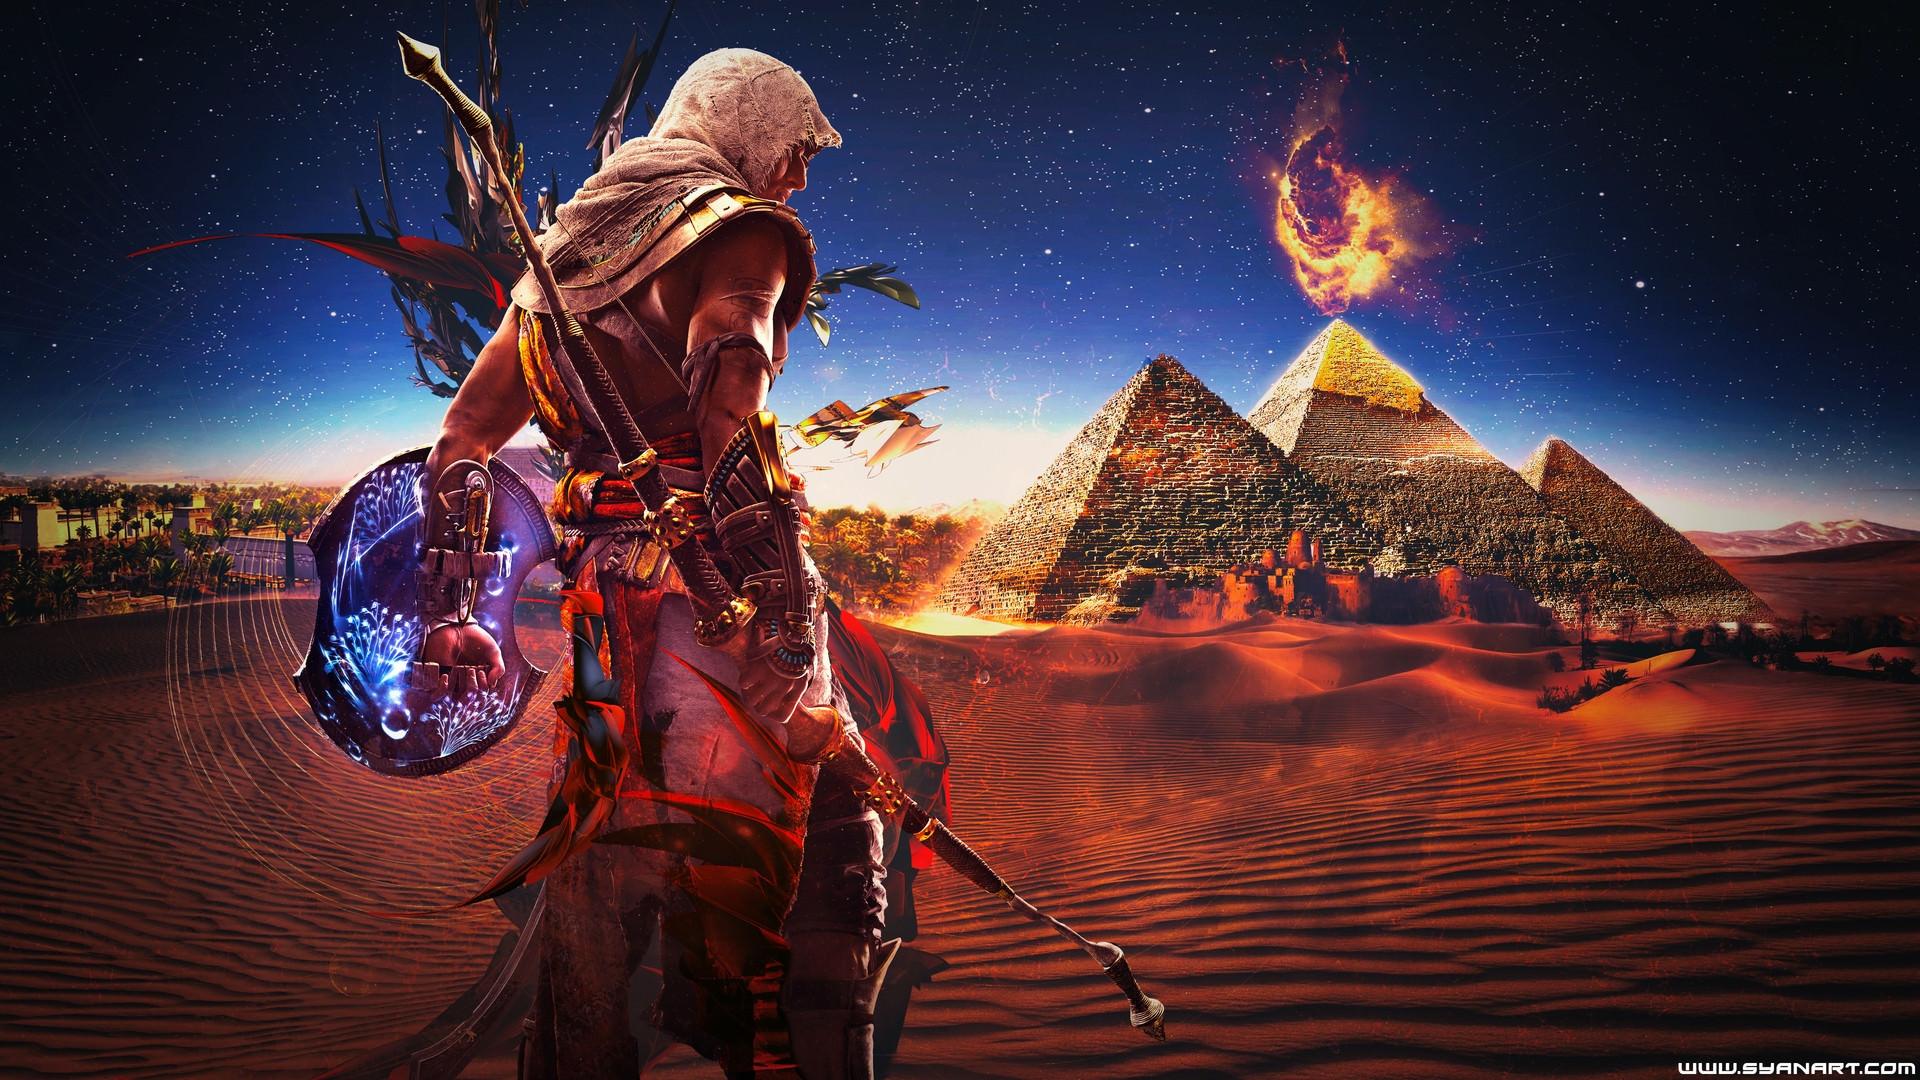 Assassin's Creed: Origins HD Wallpapers - Wallpaper Cave